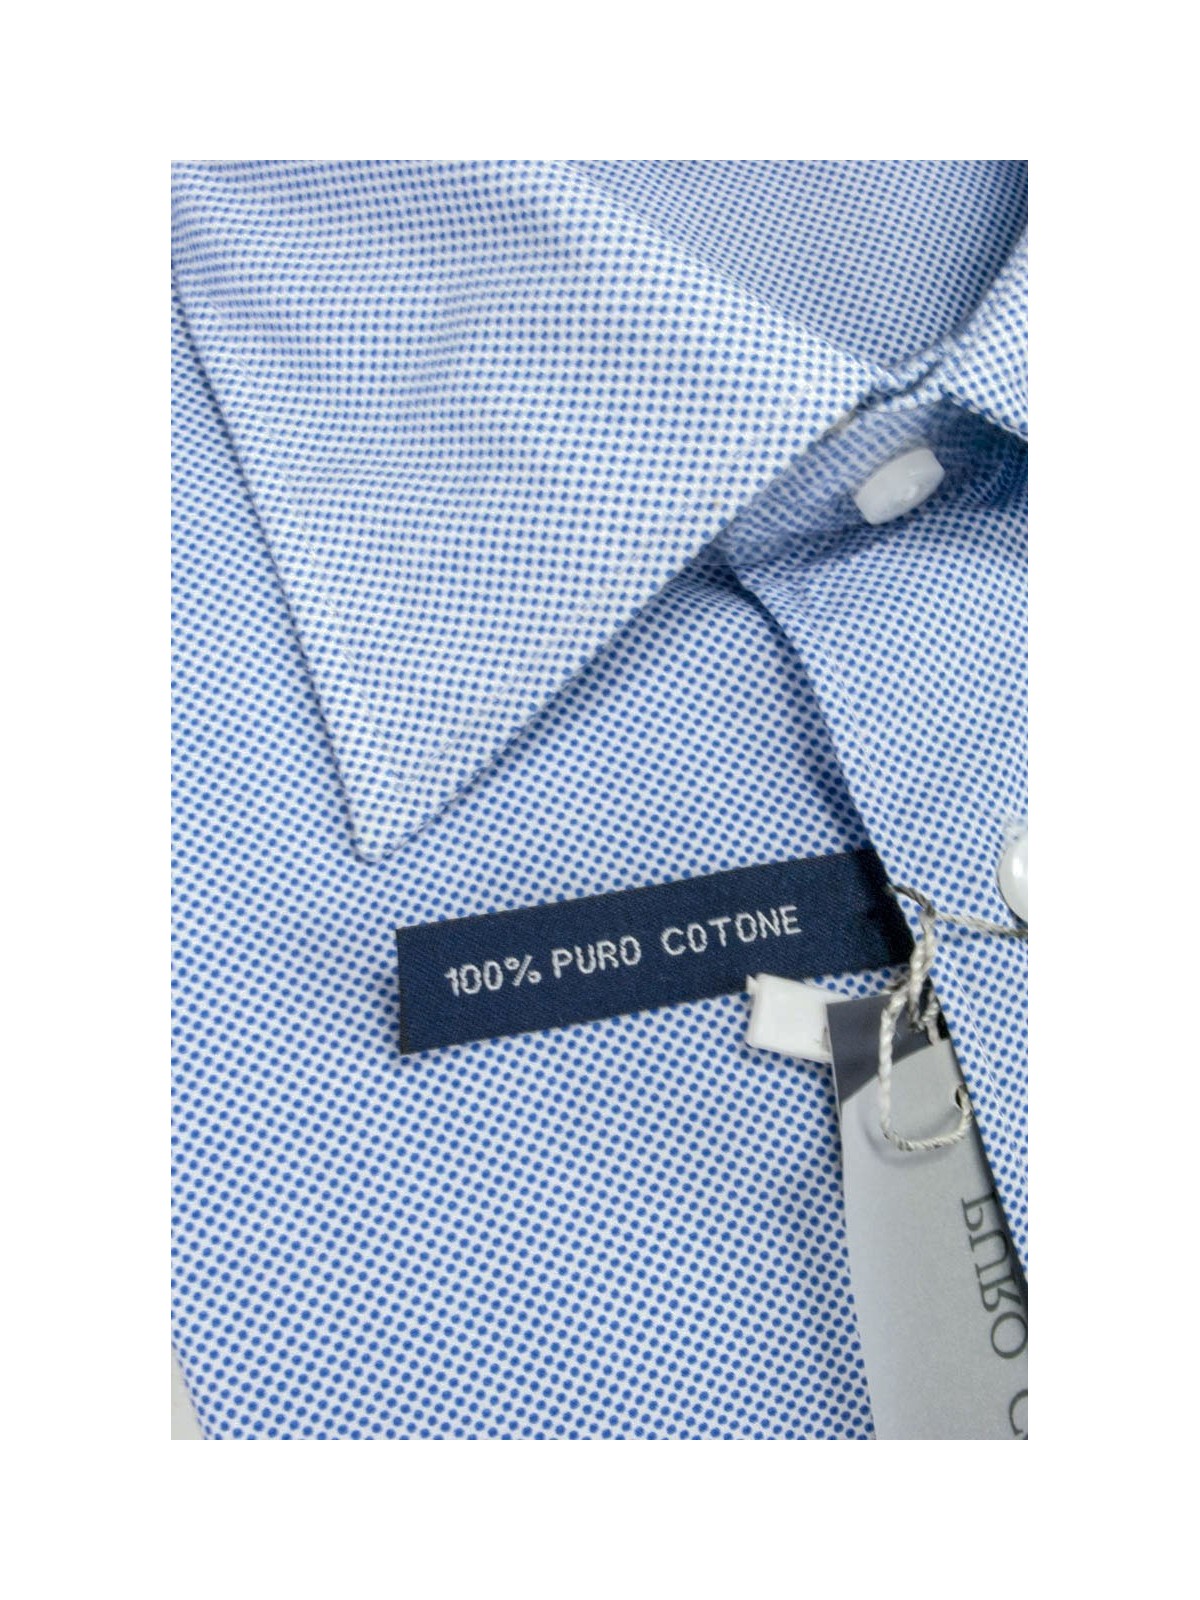 Camicia Uomo taglia M Pois Blu su Bianco Collo Italia Popeline - vestibilità dritta